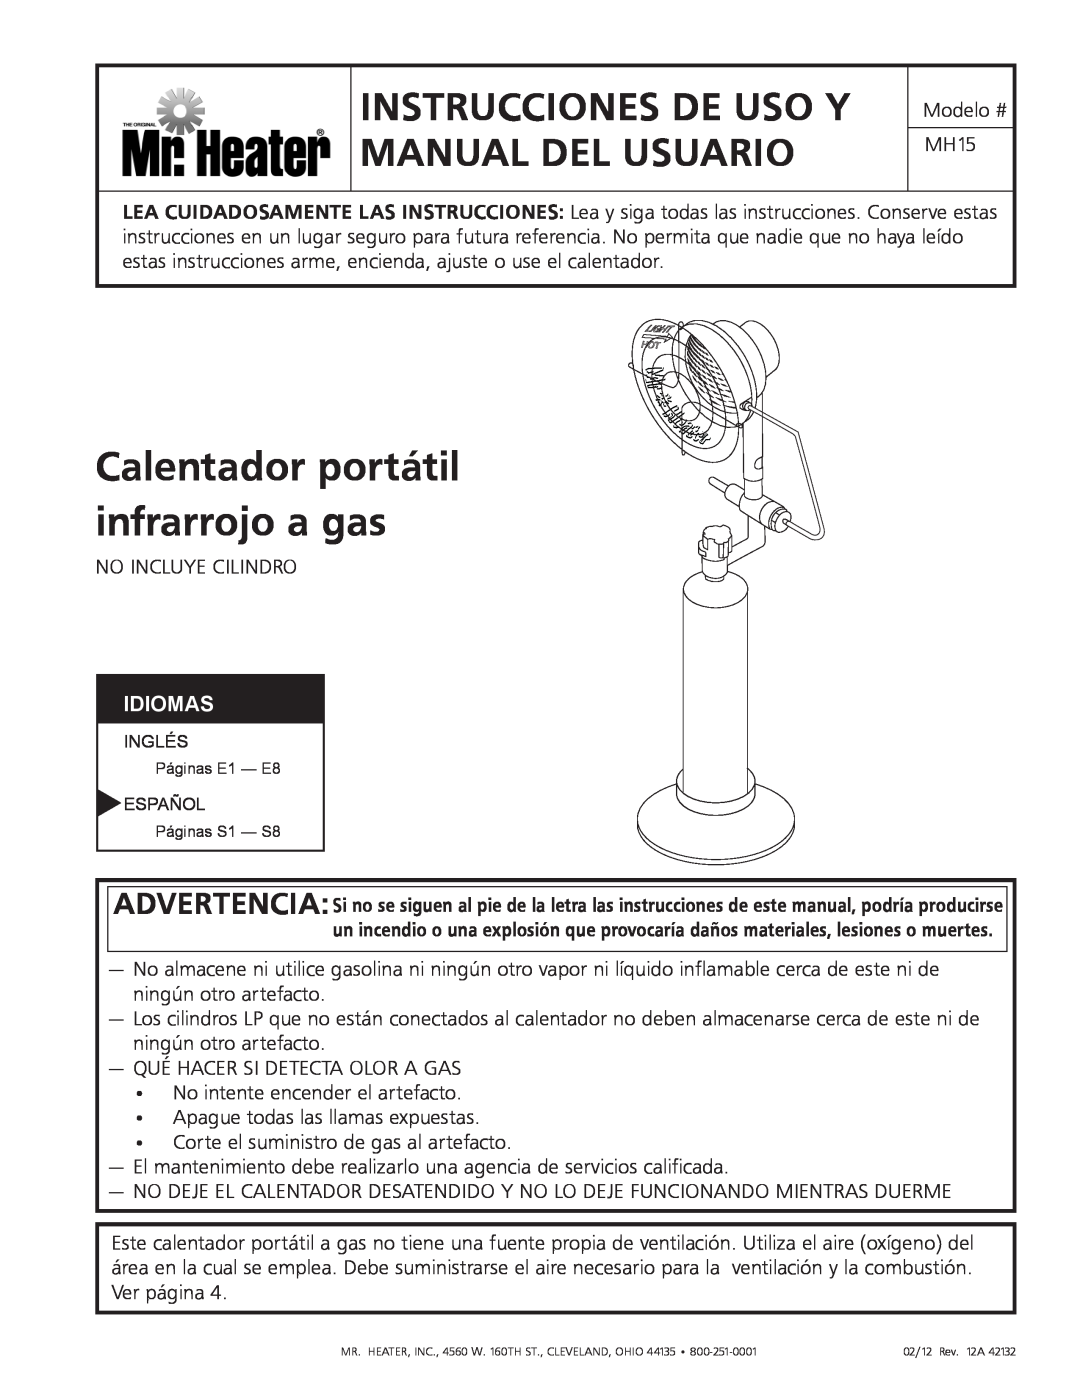 Mr. Heater MH15 Calentador portátil infrarrojo a gas, Instrucciones De Uso Y Manual Del Usuario, Idiomas 